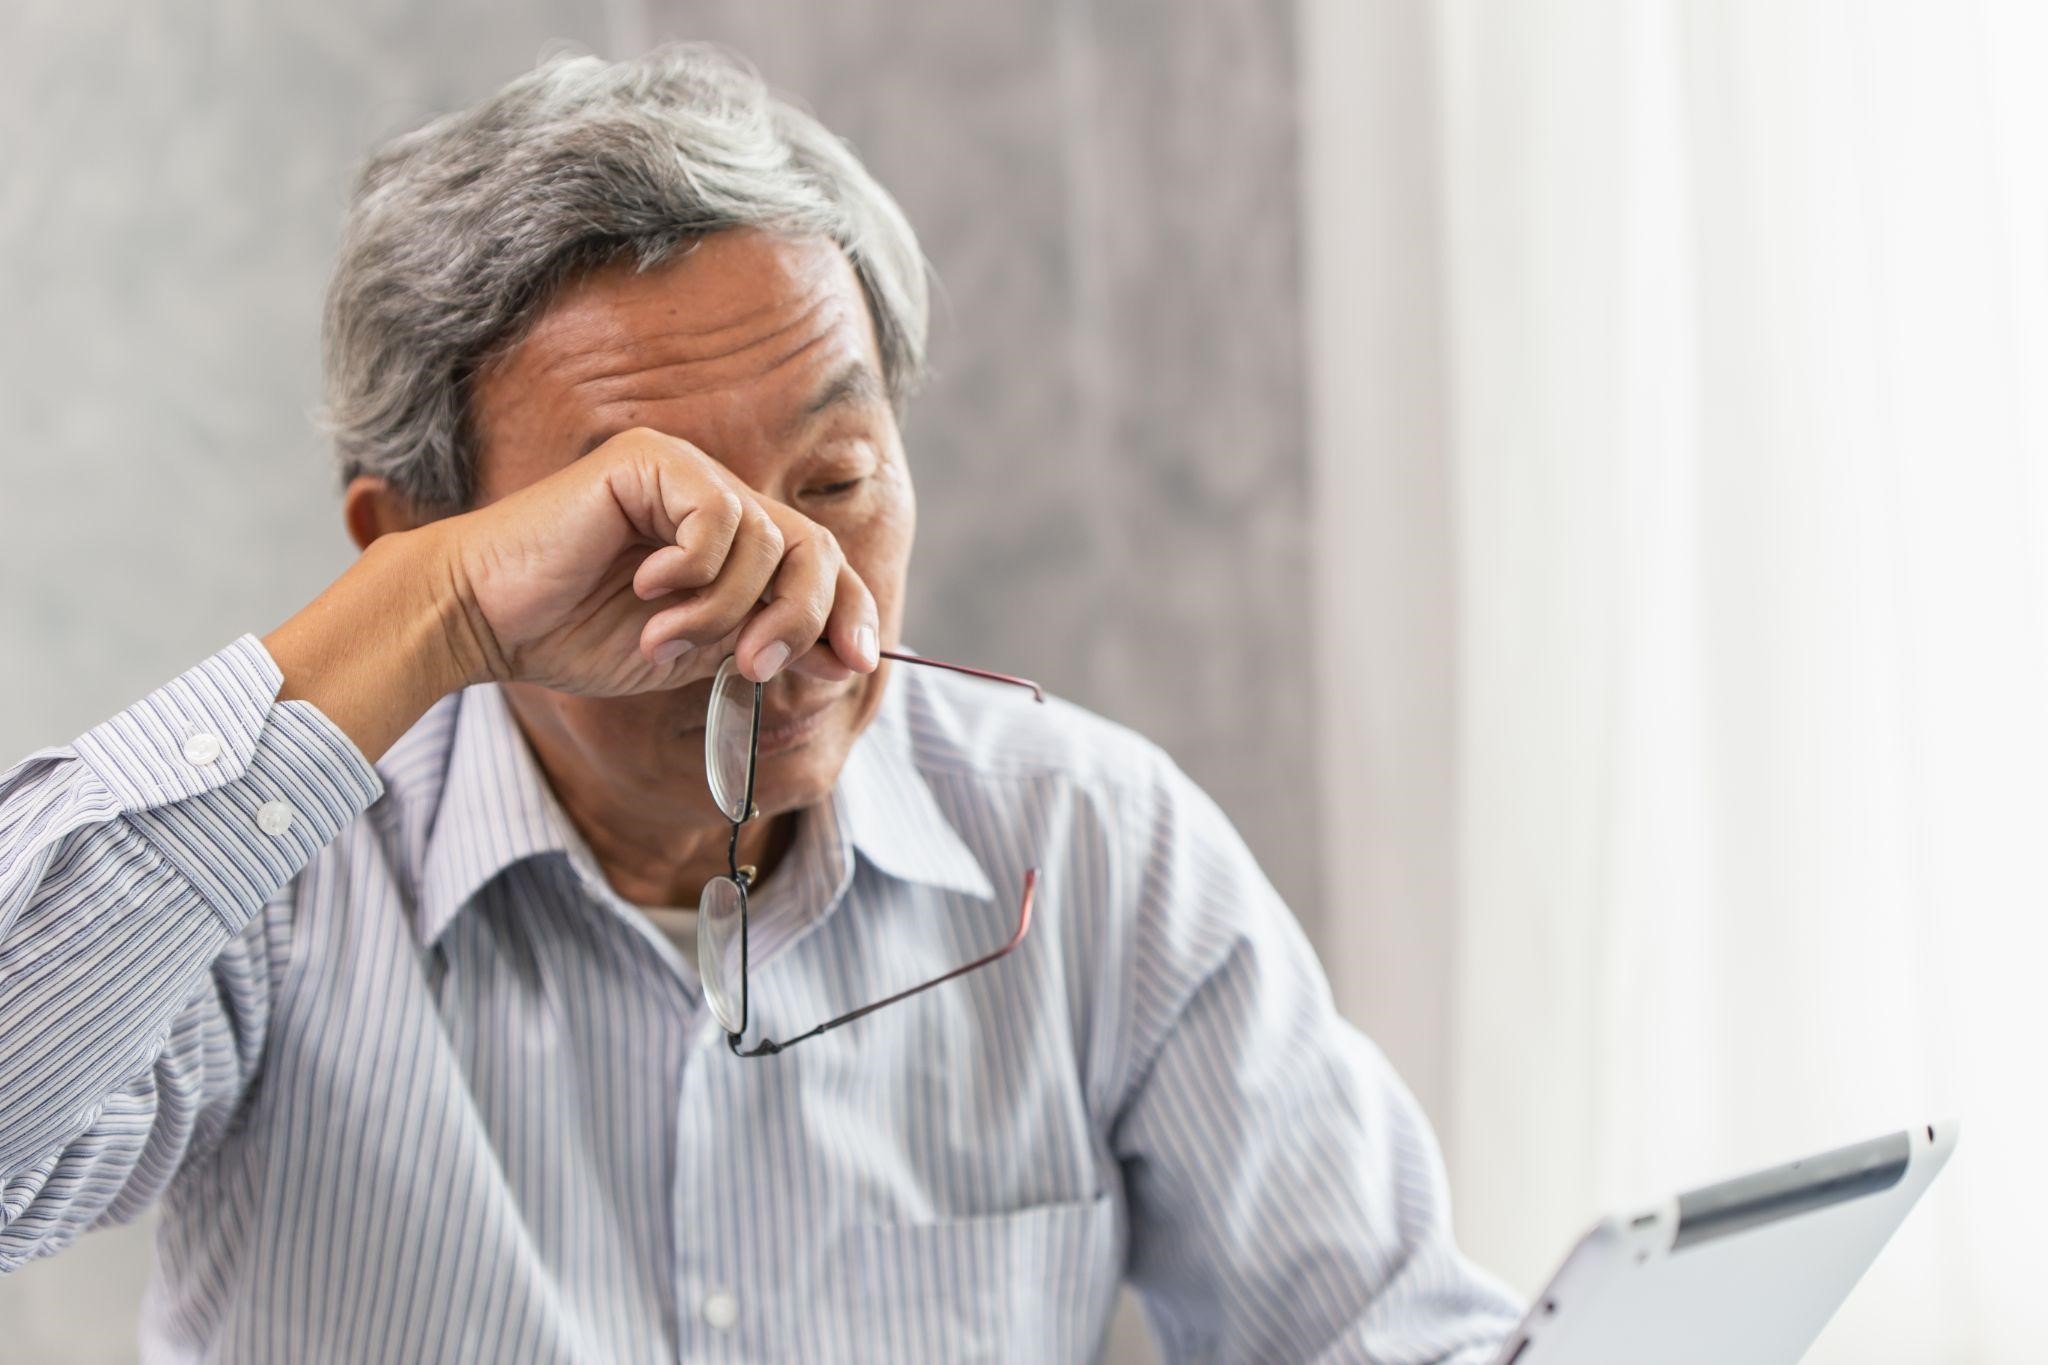 Bạn có biết về bệnh khô mắt ở người lớn tuổi? Đăng ký khám miễn phí cùng chuyên gia ngay hôm nay! - 1